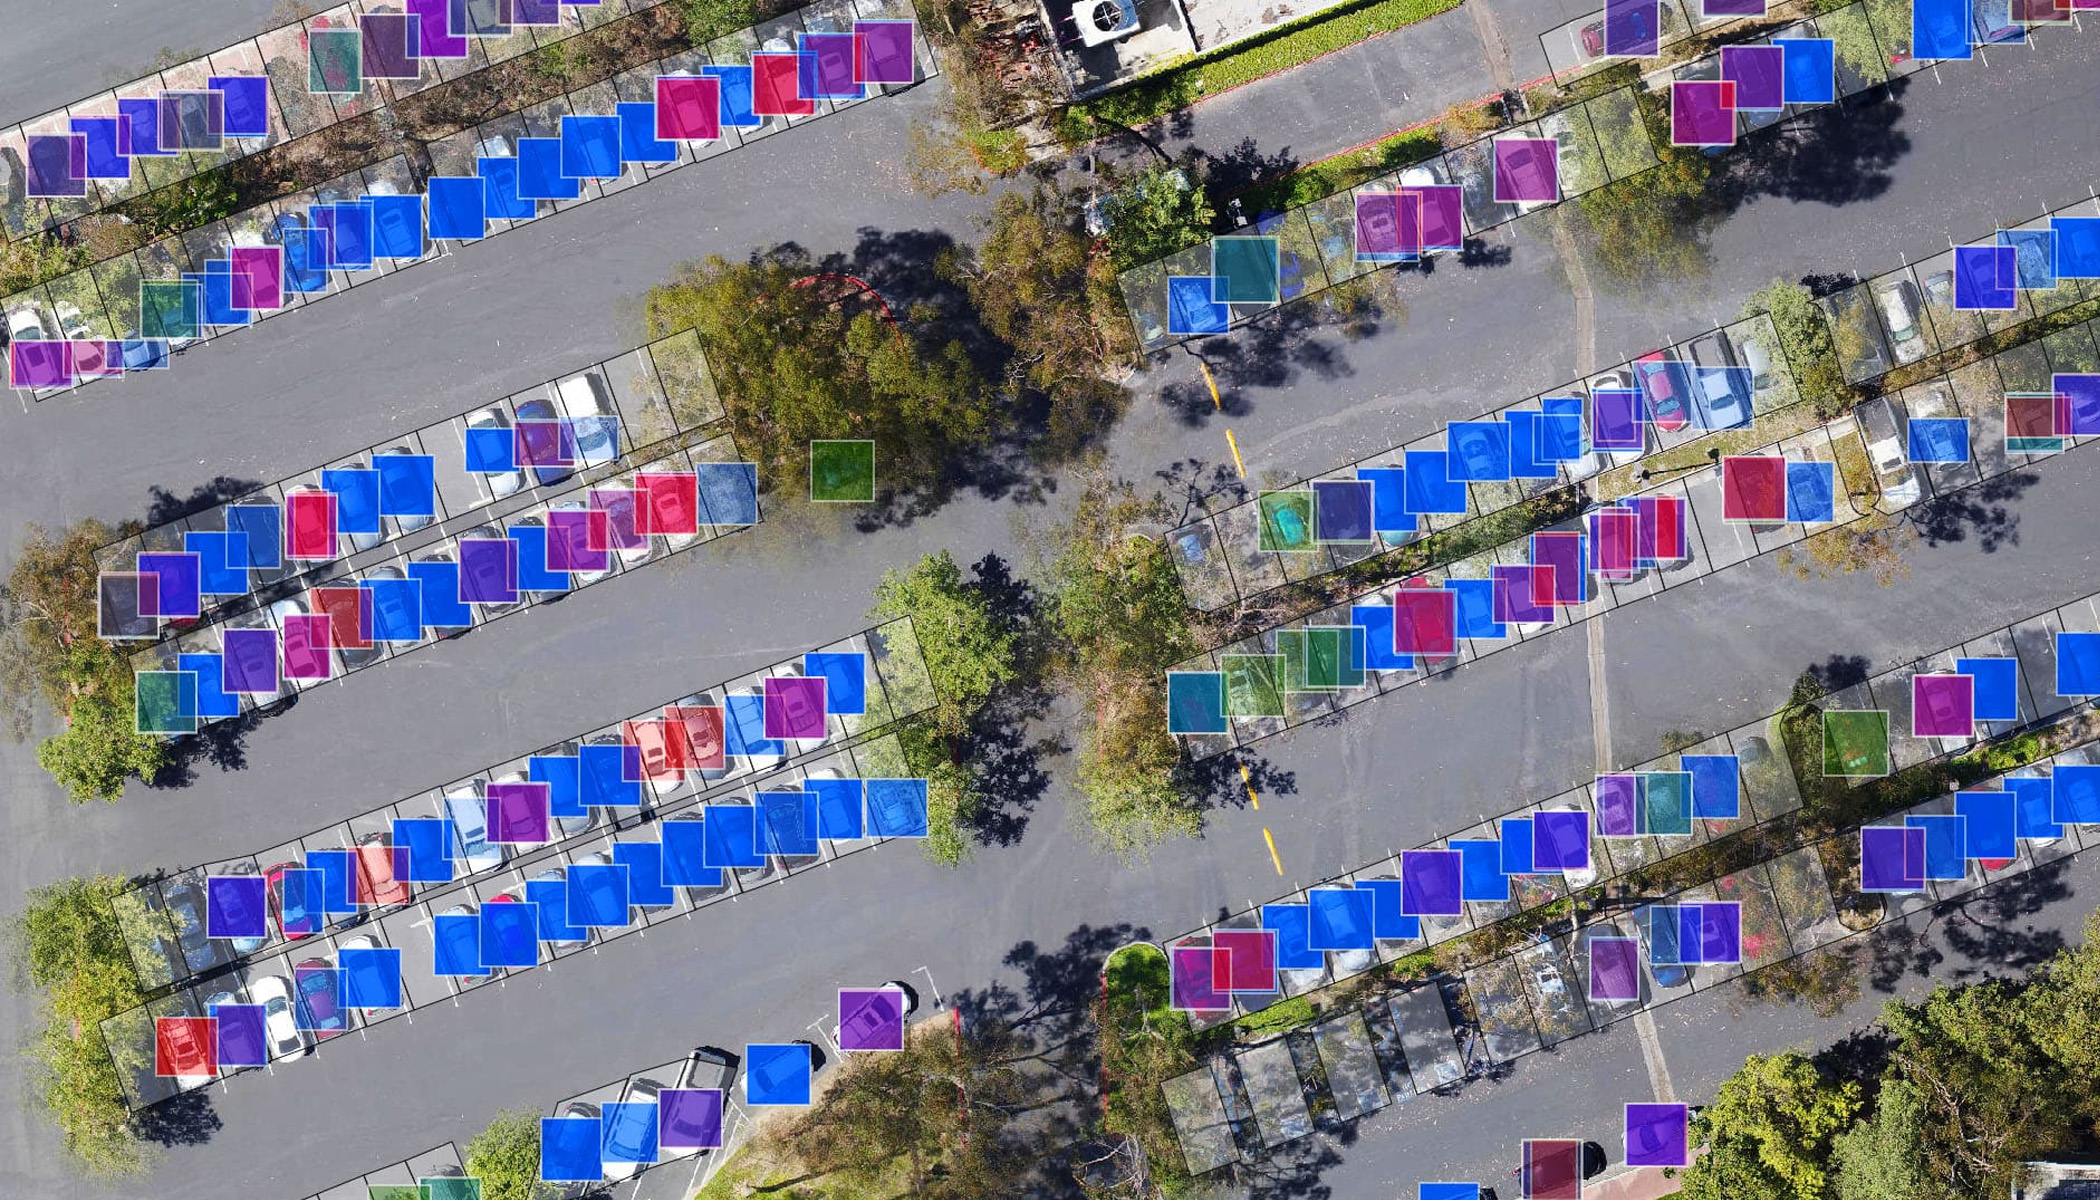 停车场的航空图片，车辆上覆盖着蓝色、紫色、绿色和粉色方块